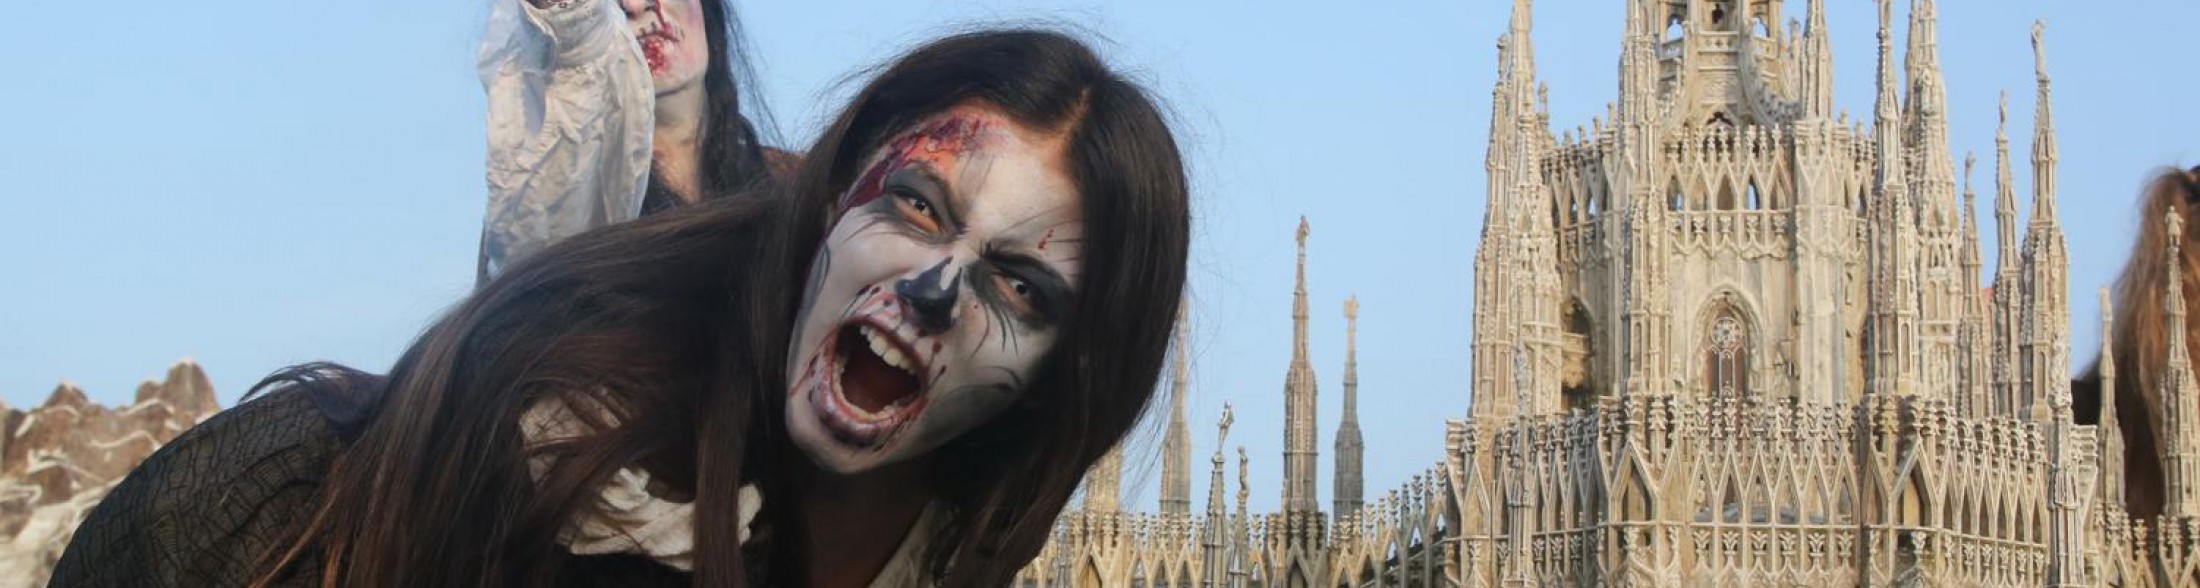 4 Novembre: Marcia degli Zombie a Italia in Miniatura